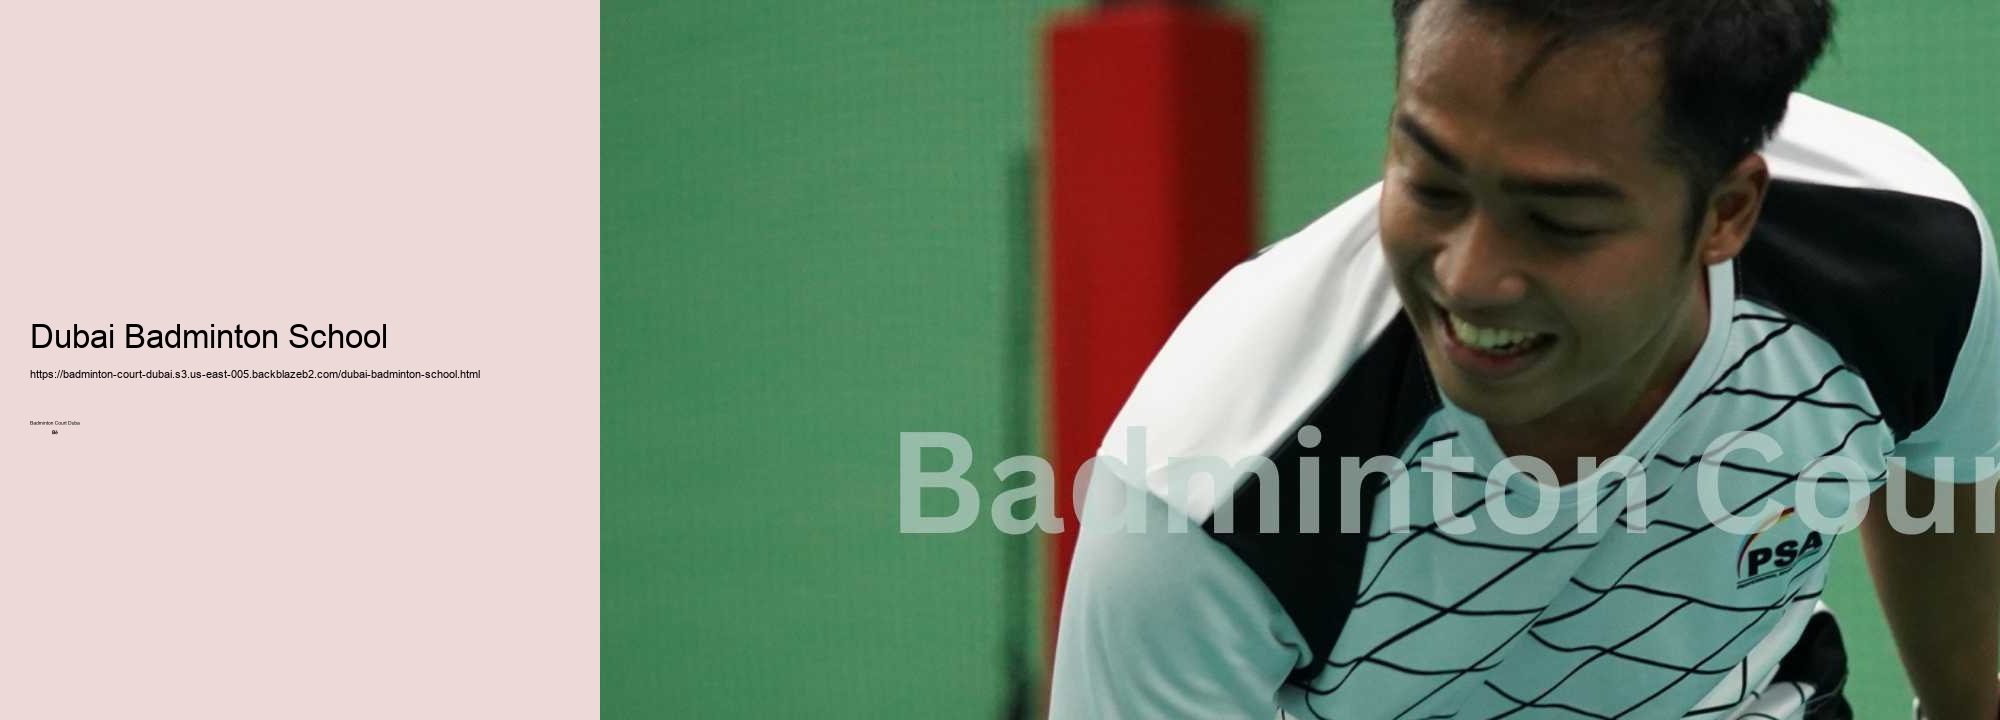 Dubai Badminton School